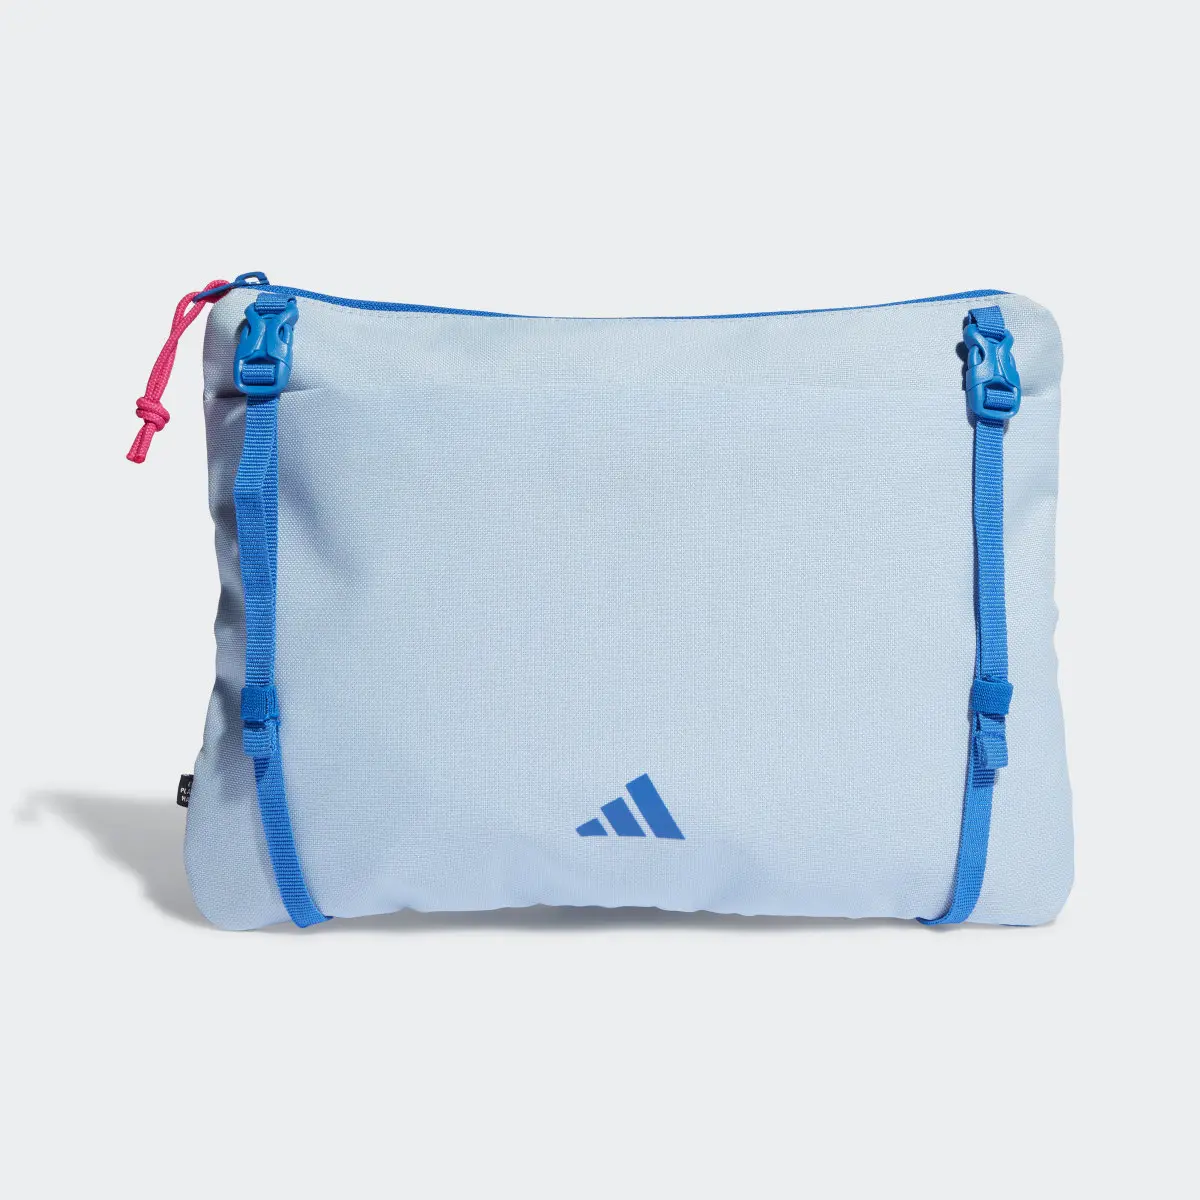 Adidas Spanien Sacoche Tasche. 2